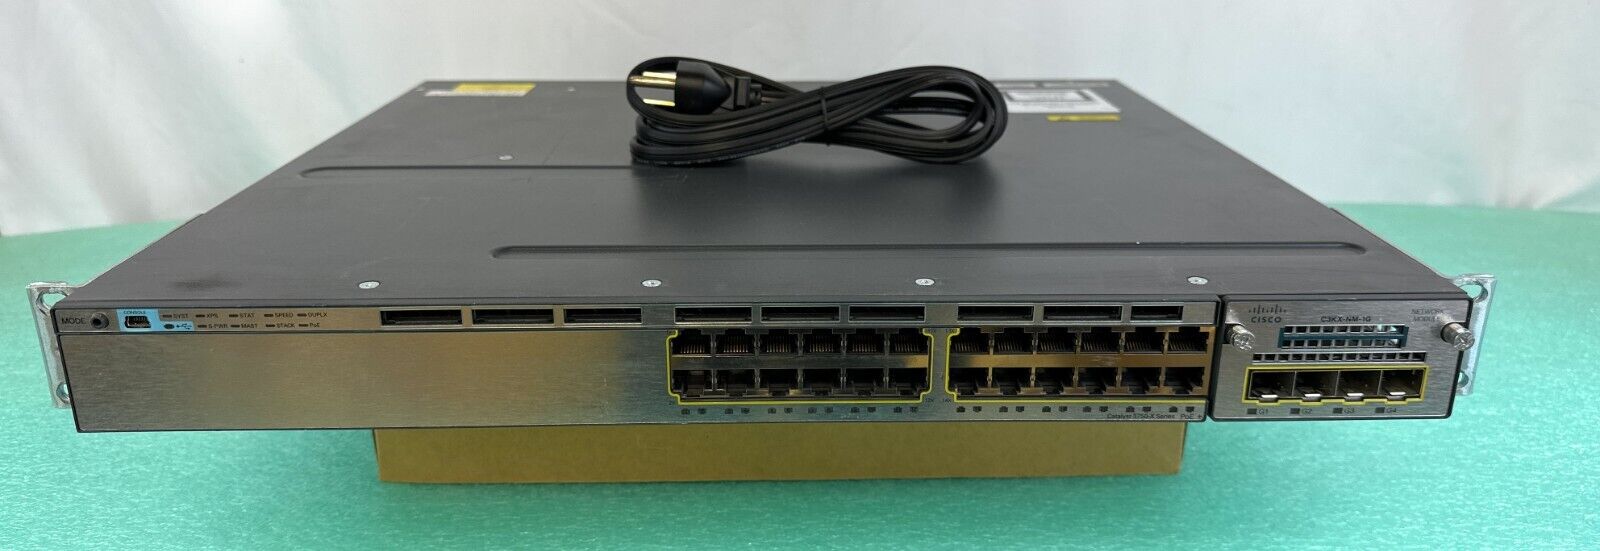 Cisco WS-C3750X-24P-S 24 Port Layer 3 Gigabit PoE+ Switch 715W Power C3KX-NM-1G